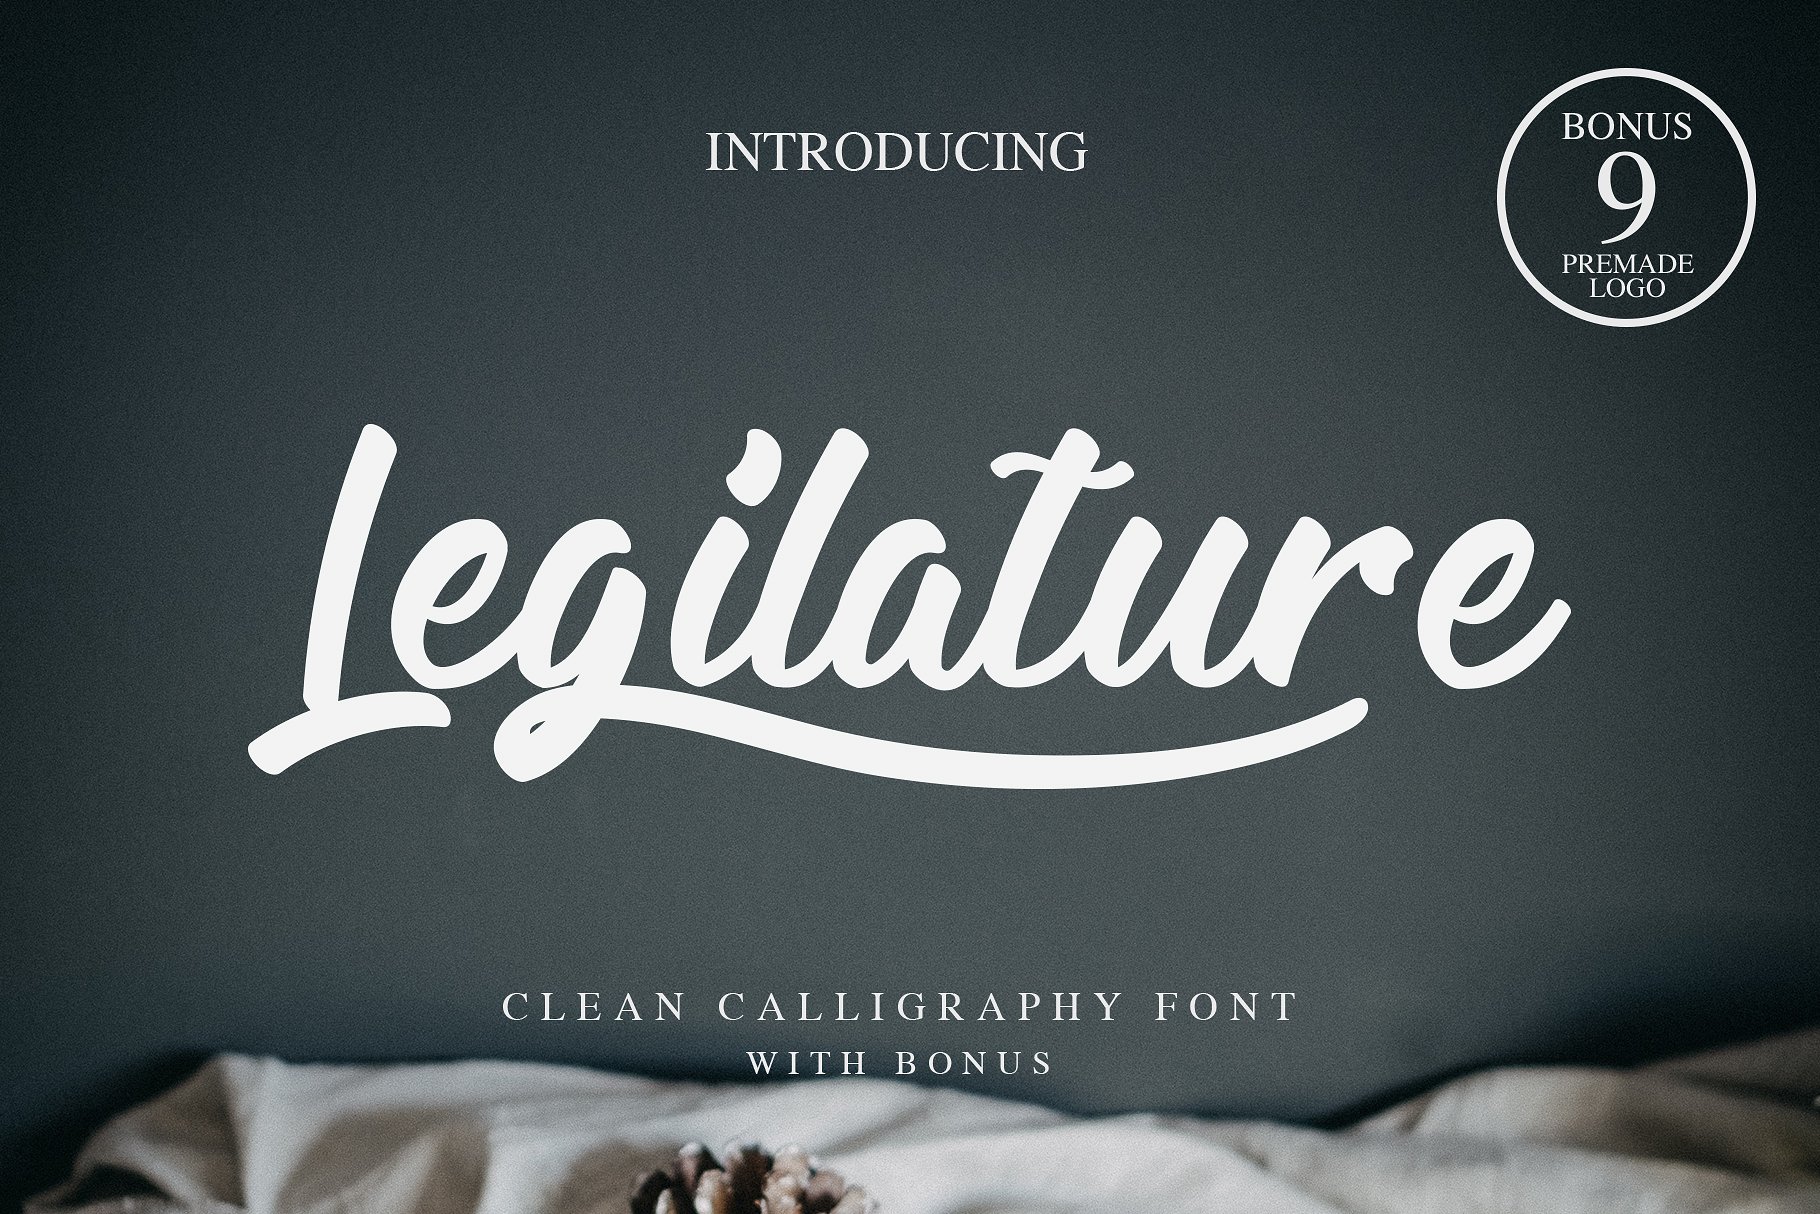 Legilature clean calligraphy logo font